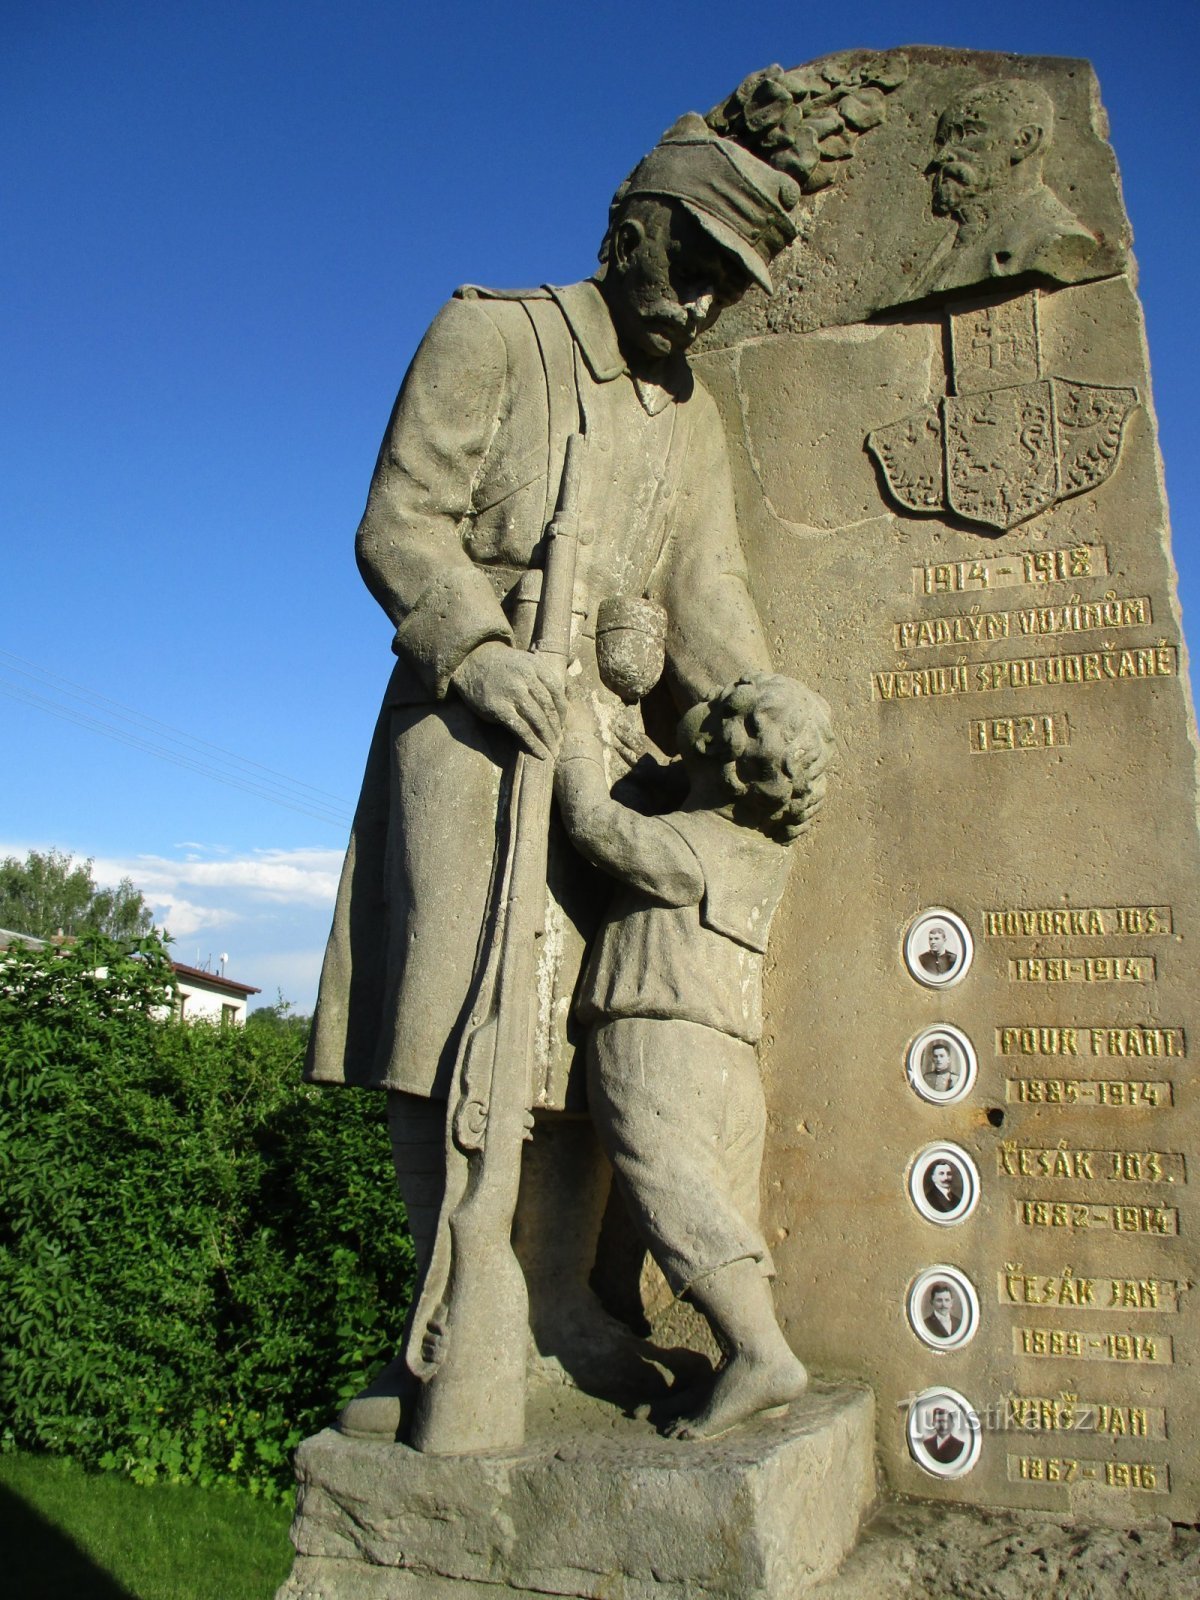 Ensimmäisessä maailmansodassa kuolleiden muistomerkki (Lochenice)